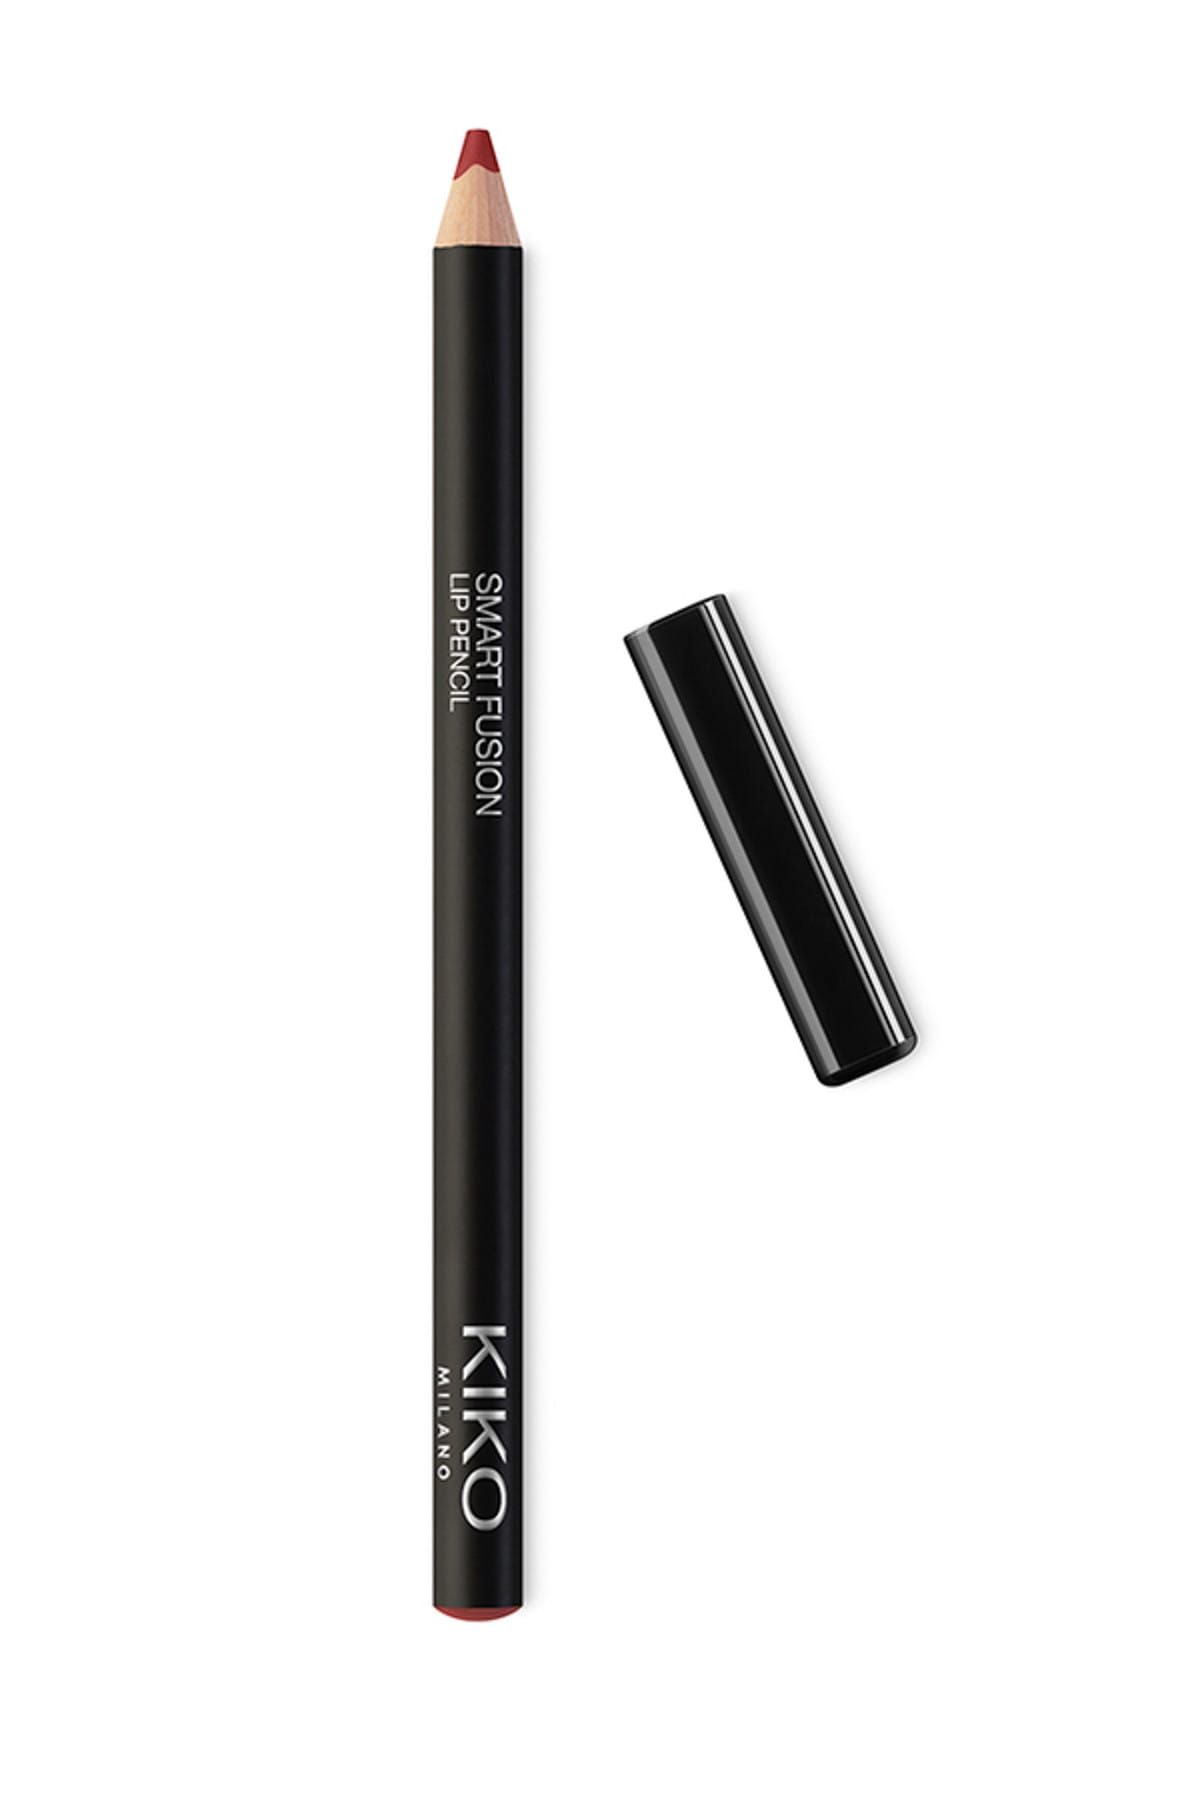 KIKO مداد لب Smart Fusion بافت نرم و روان شماره 535 رنگ قرمز اسکارلت